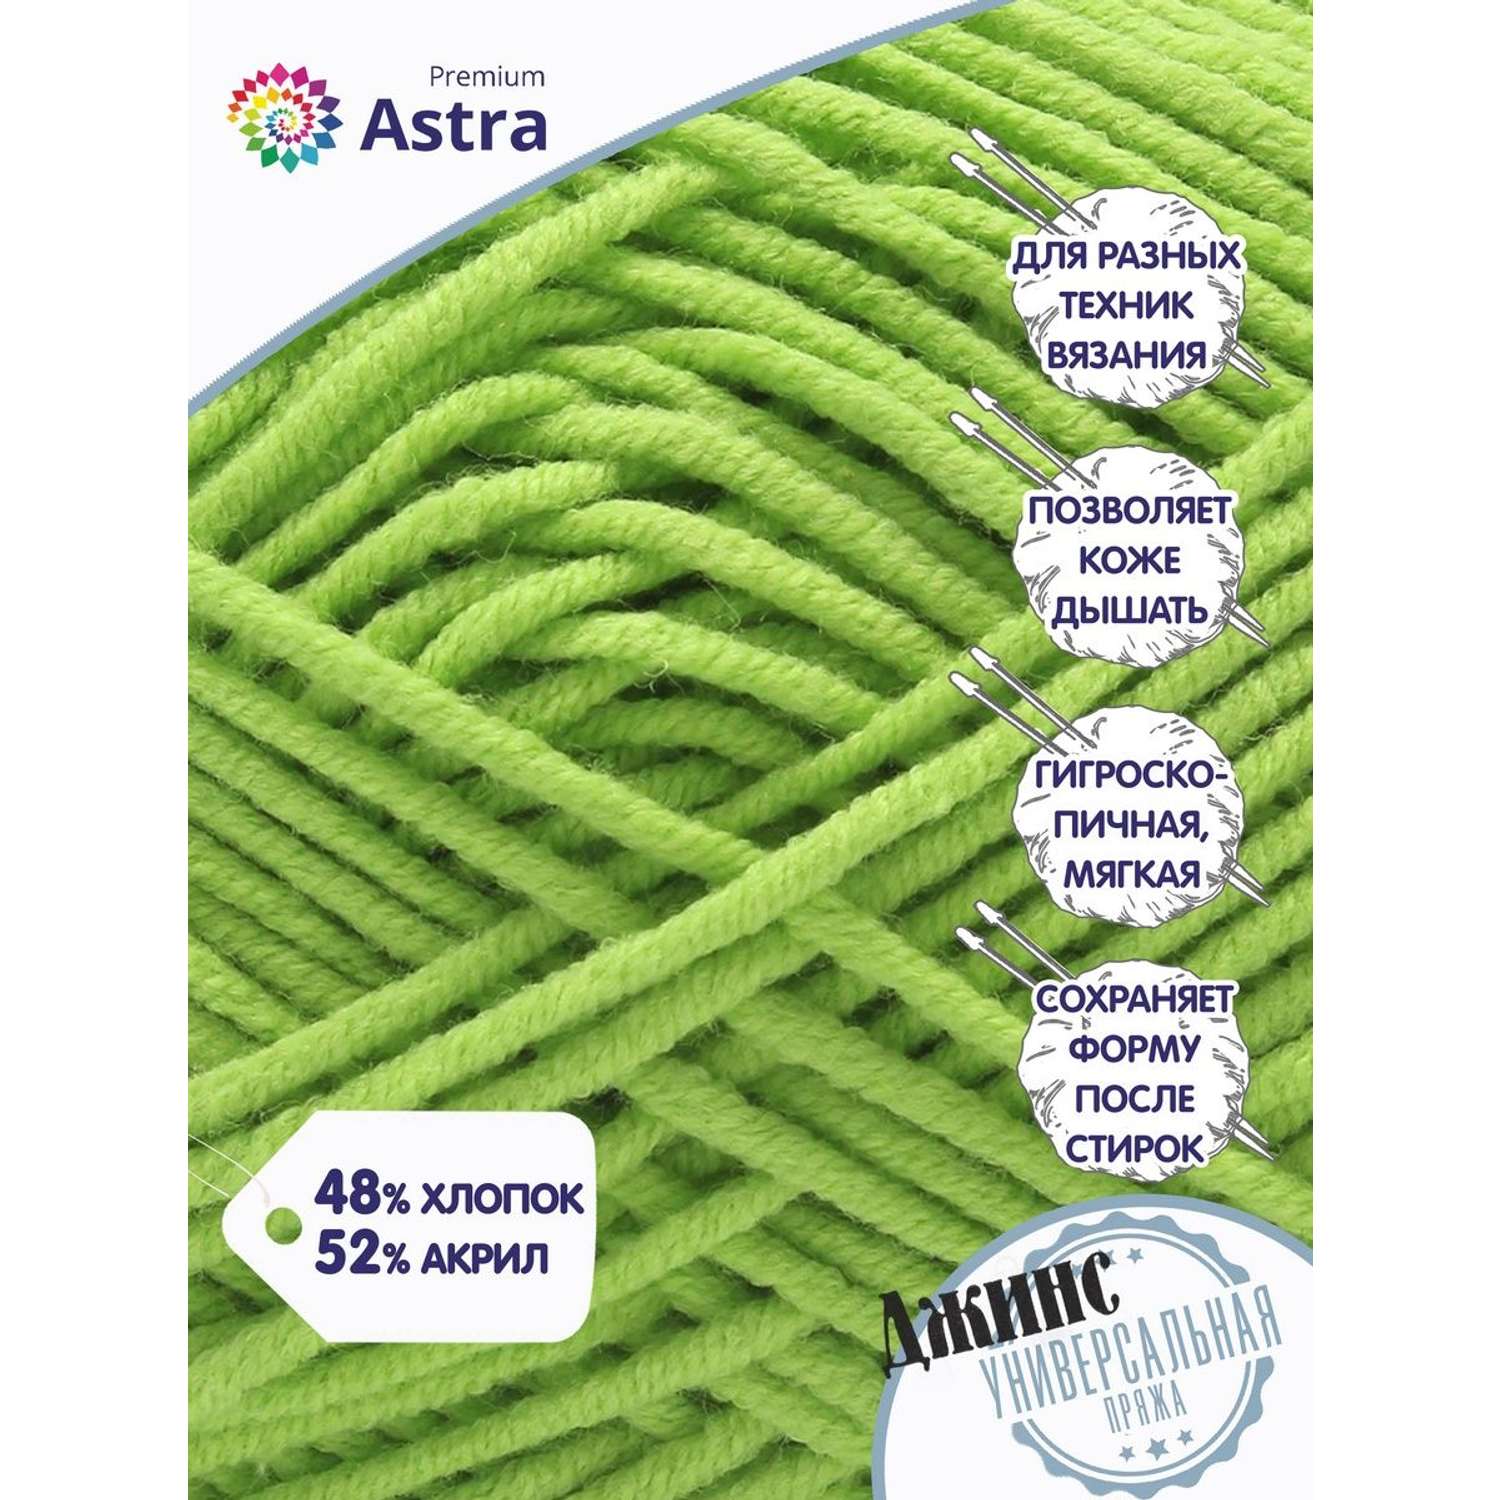 Пряжа для вязания Astra Premium джинс для повседневной одежды акрил хлопок 50 гр 135 м 450 зеленый 4 мотка - фото 3